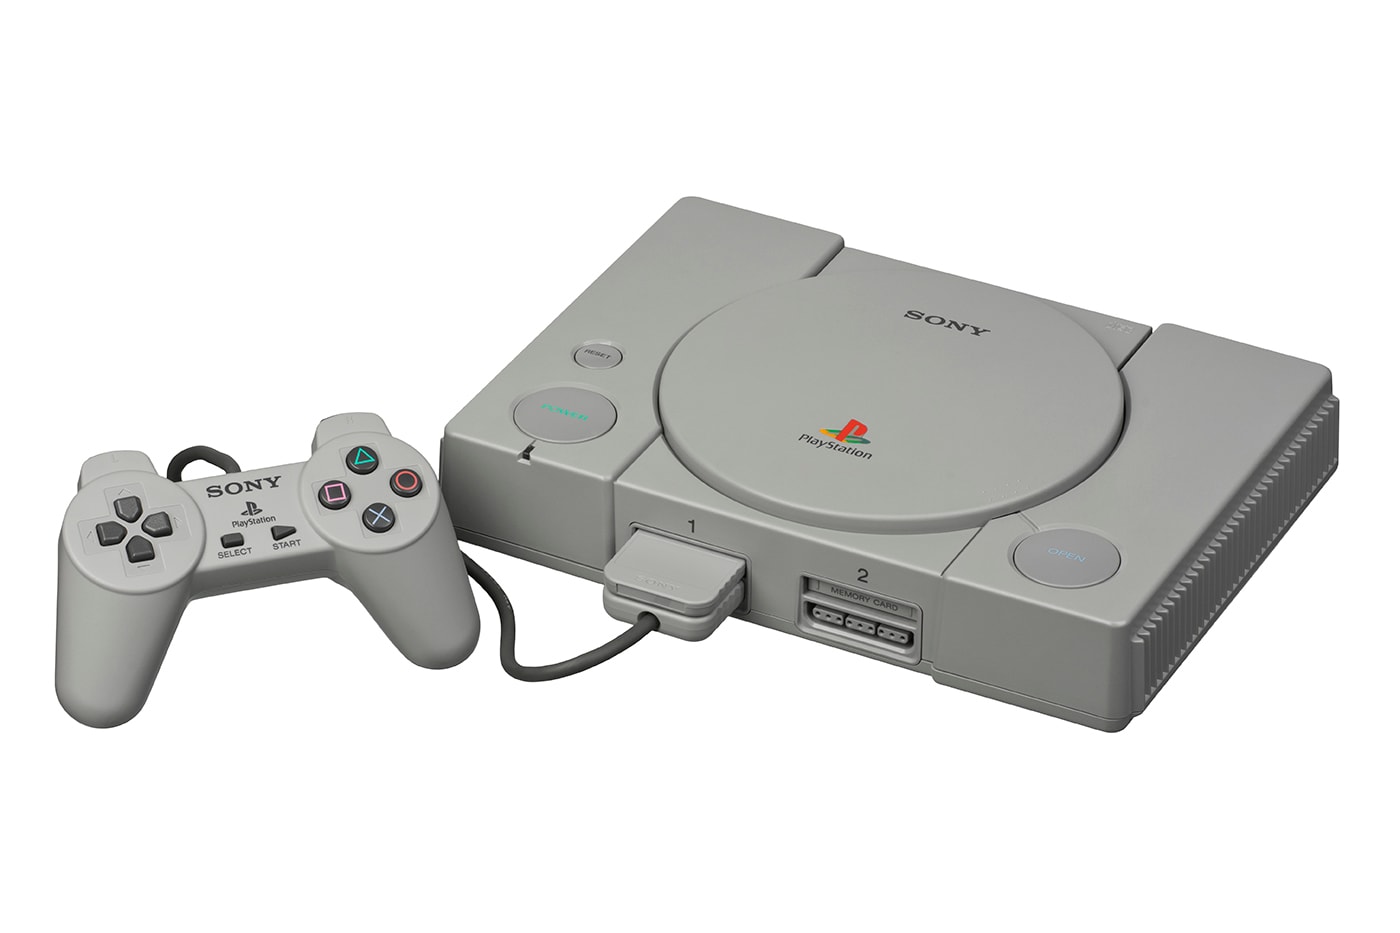 Sony PlayStation Classic John Kodera video games gaming